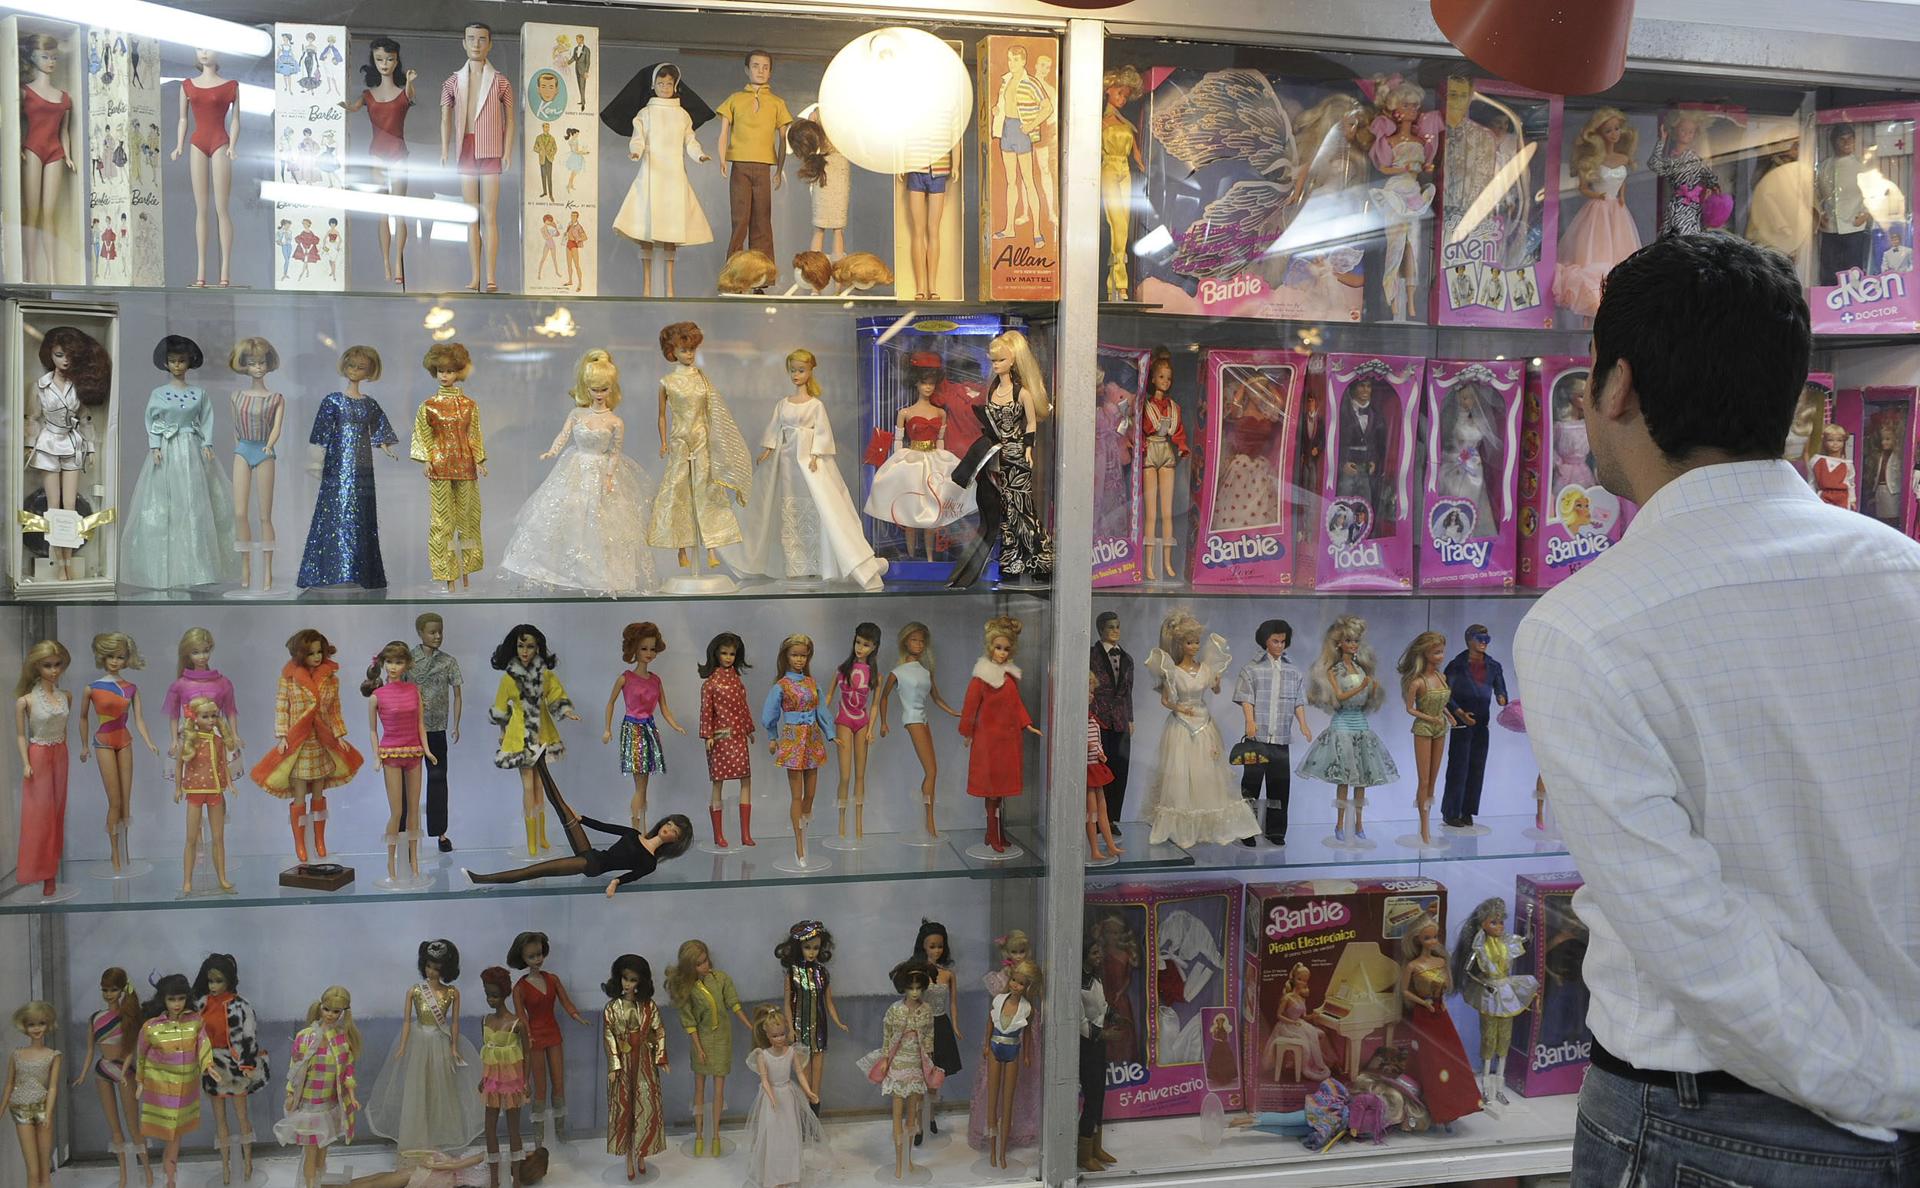 Foto de archivo de una exposición de muñecas Barbie. EFE/Mario Guzmán